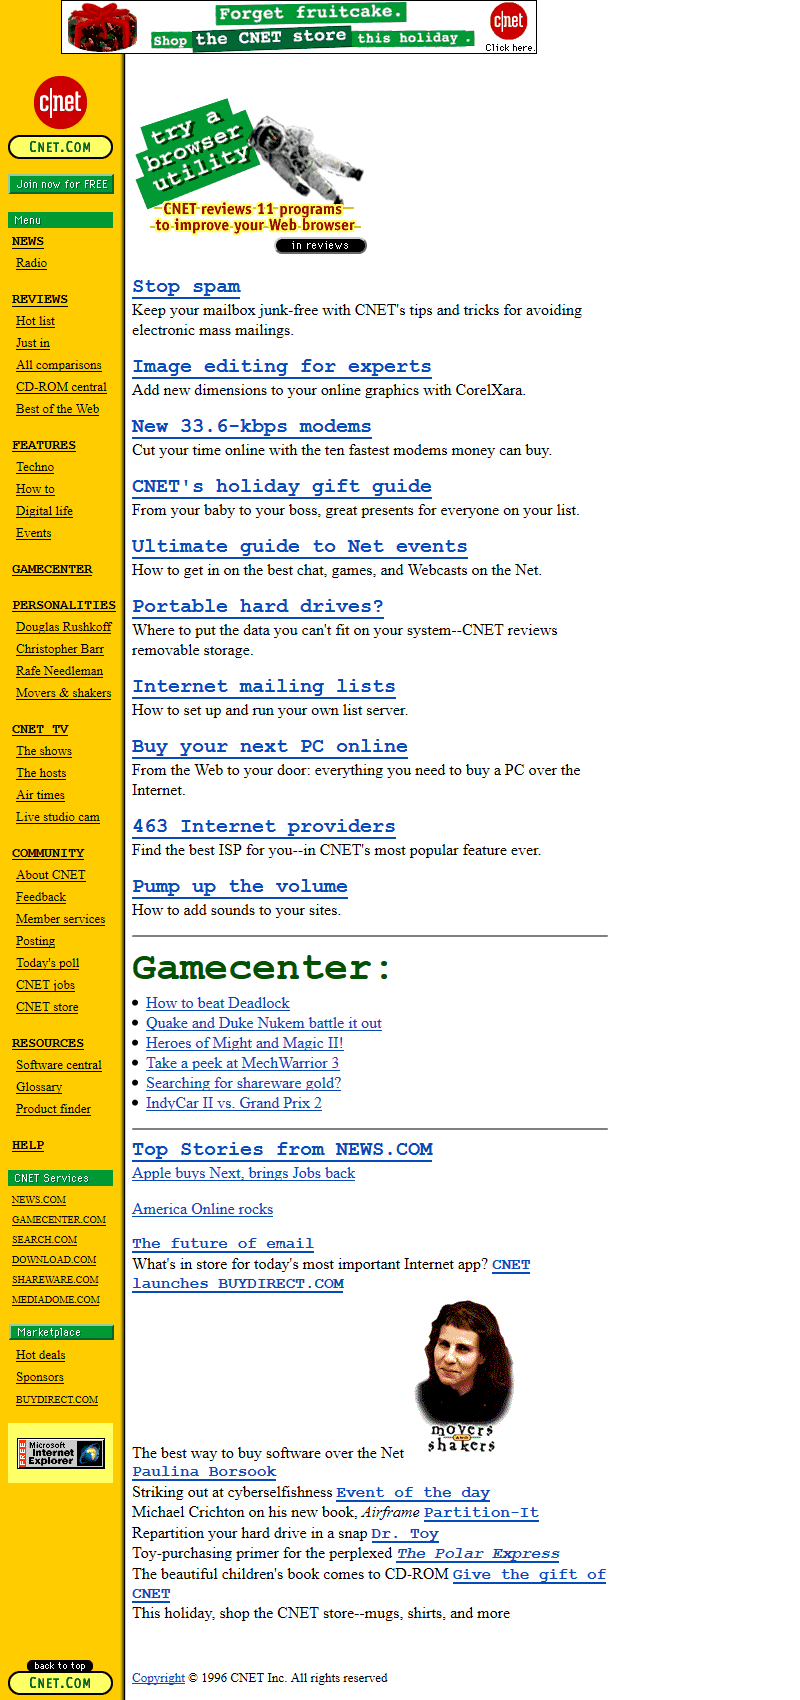 CNET in 1996